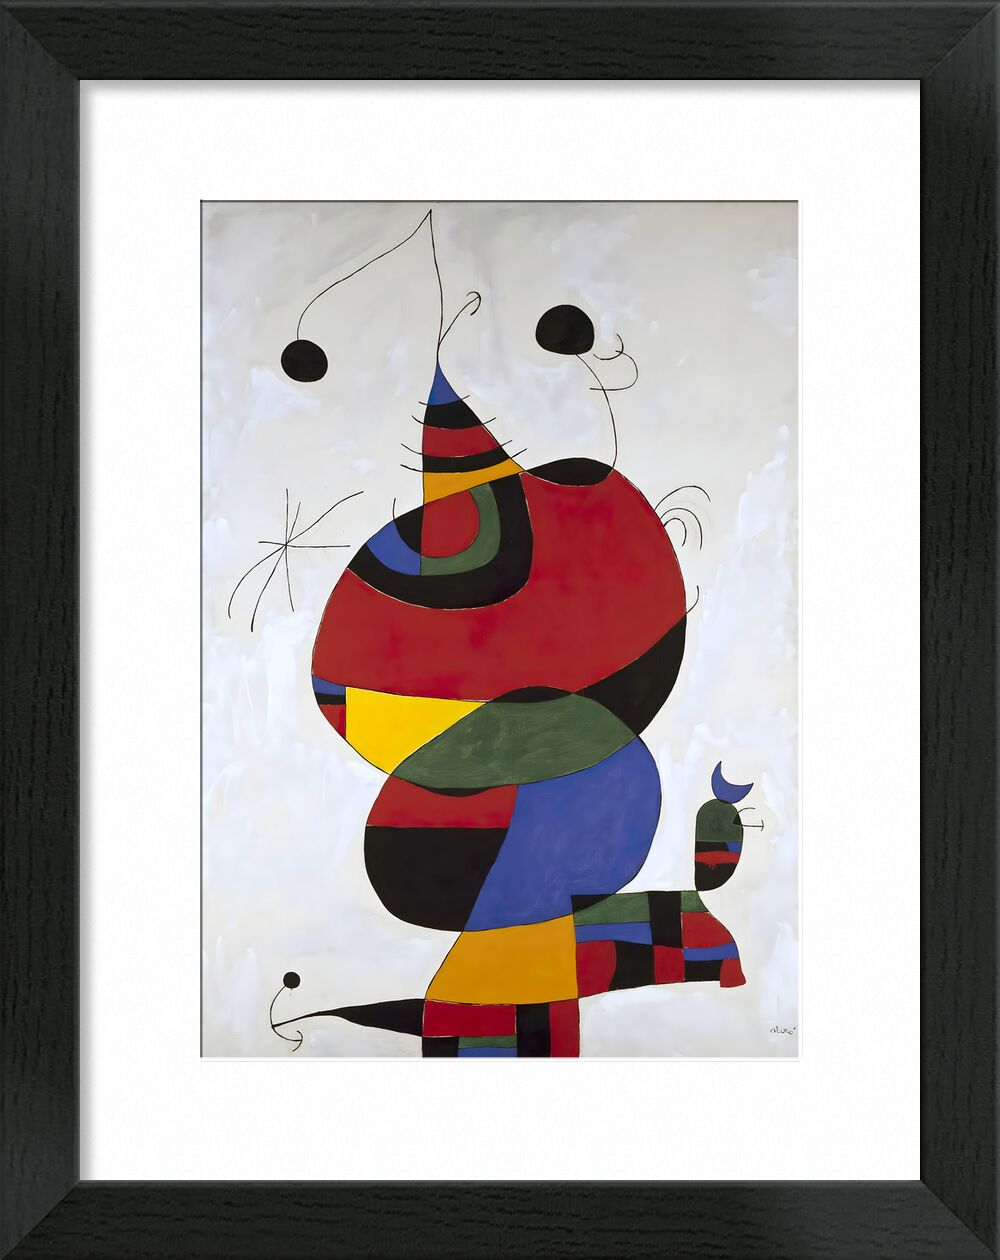 Hommage a Picasso von Bildende Kunst, Prodi Art, Picasso, Porträt, Bleistiftzeichnung, Joan Miró, Tribut